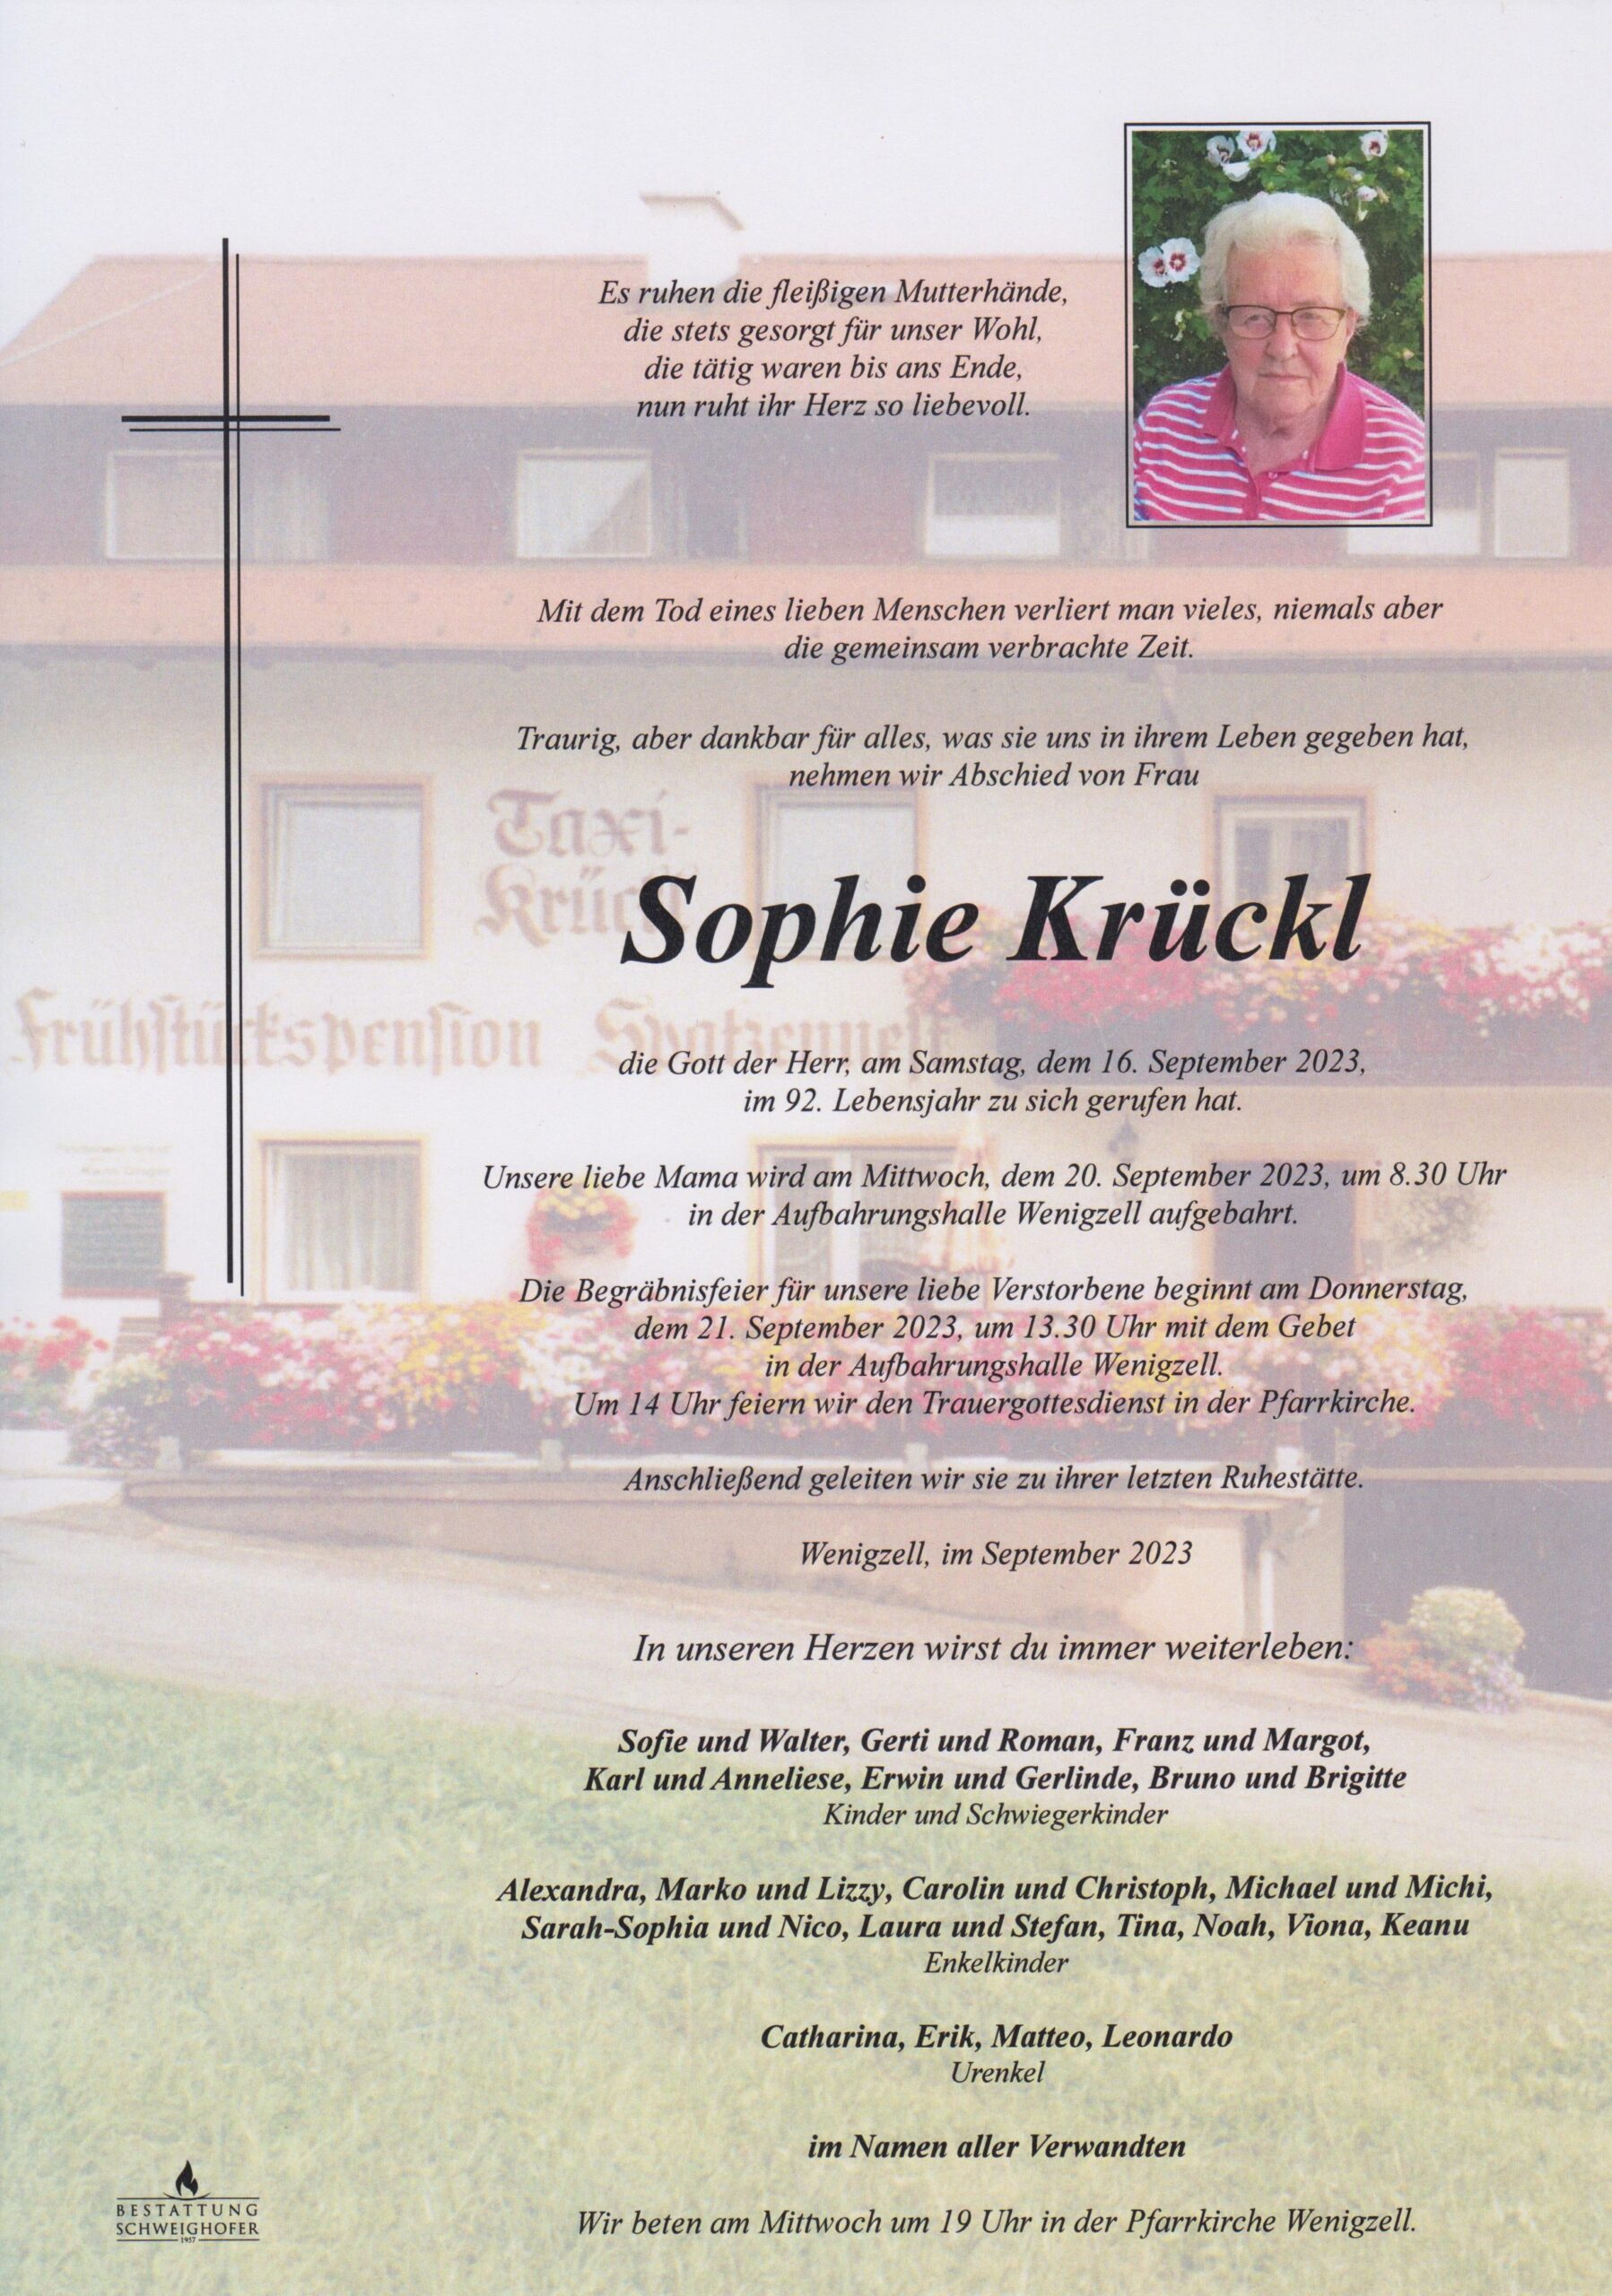 Sophia Krückl